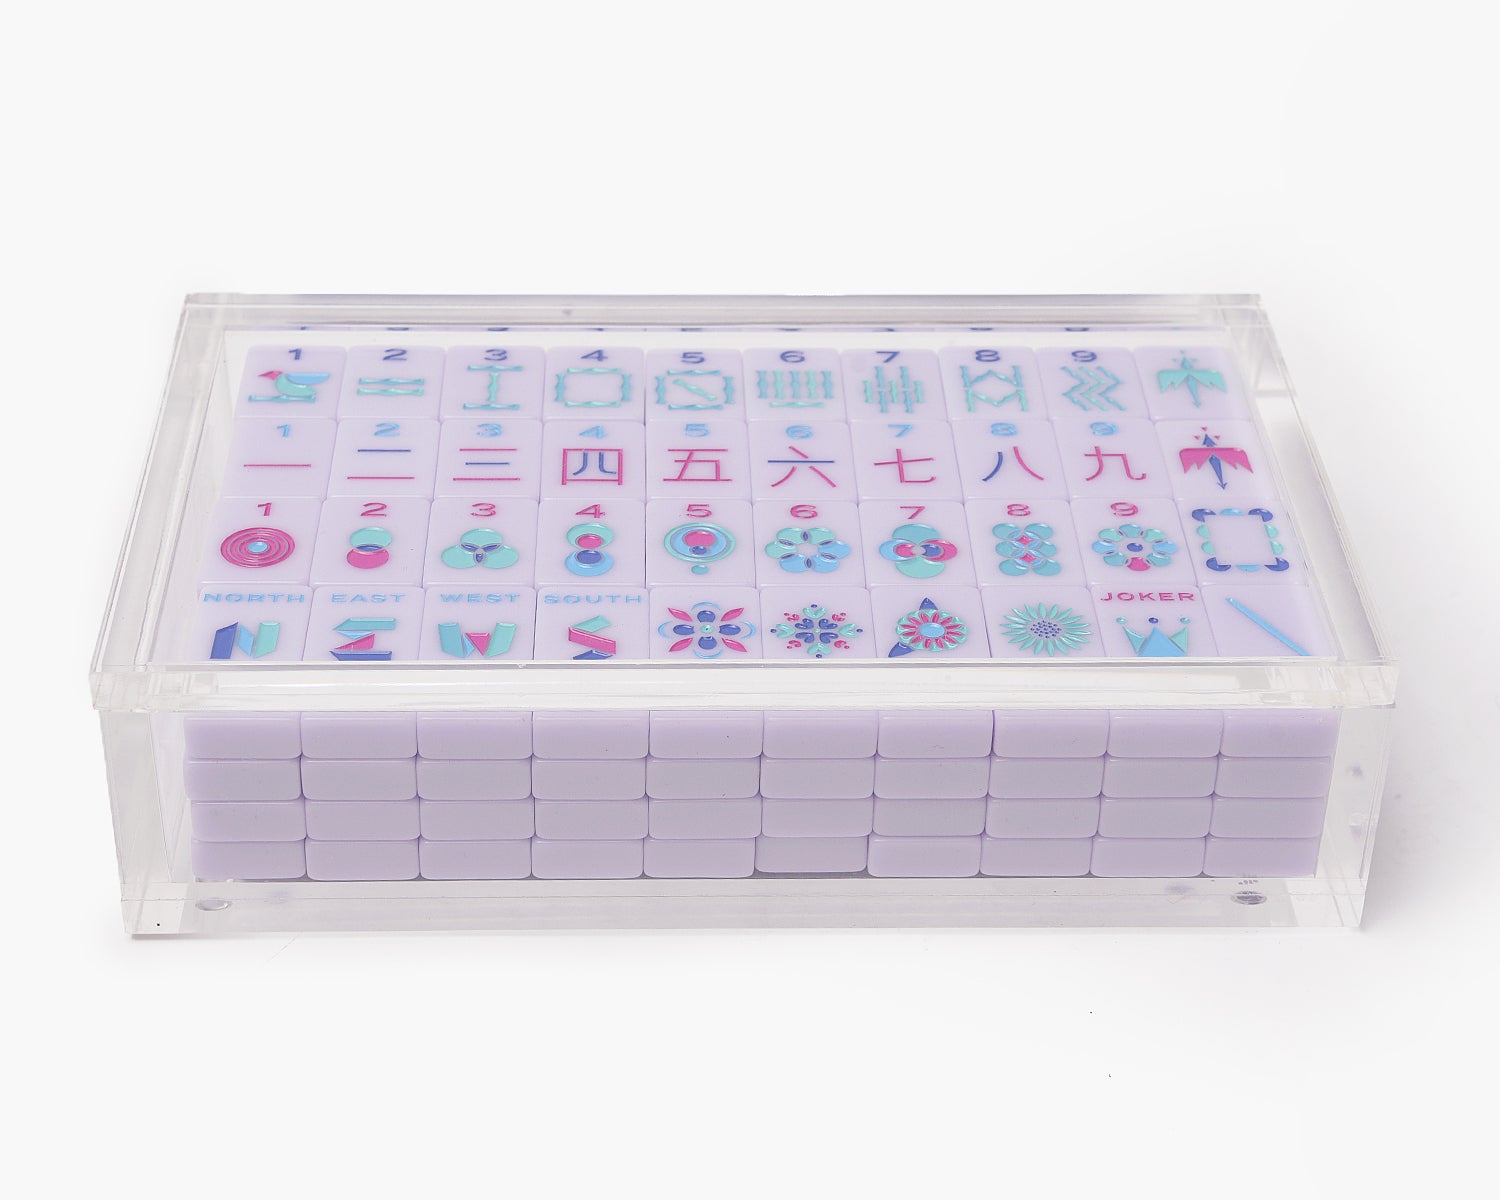 Acrylic Display Box for The Mahjong Line Tiles